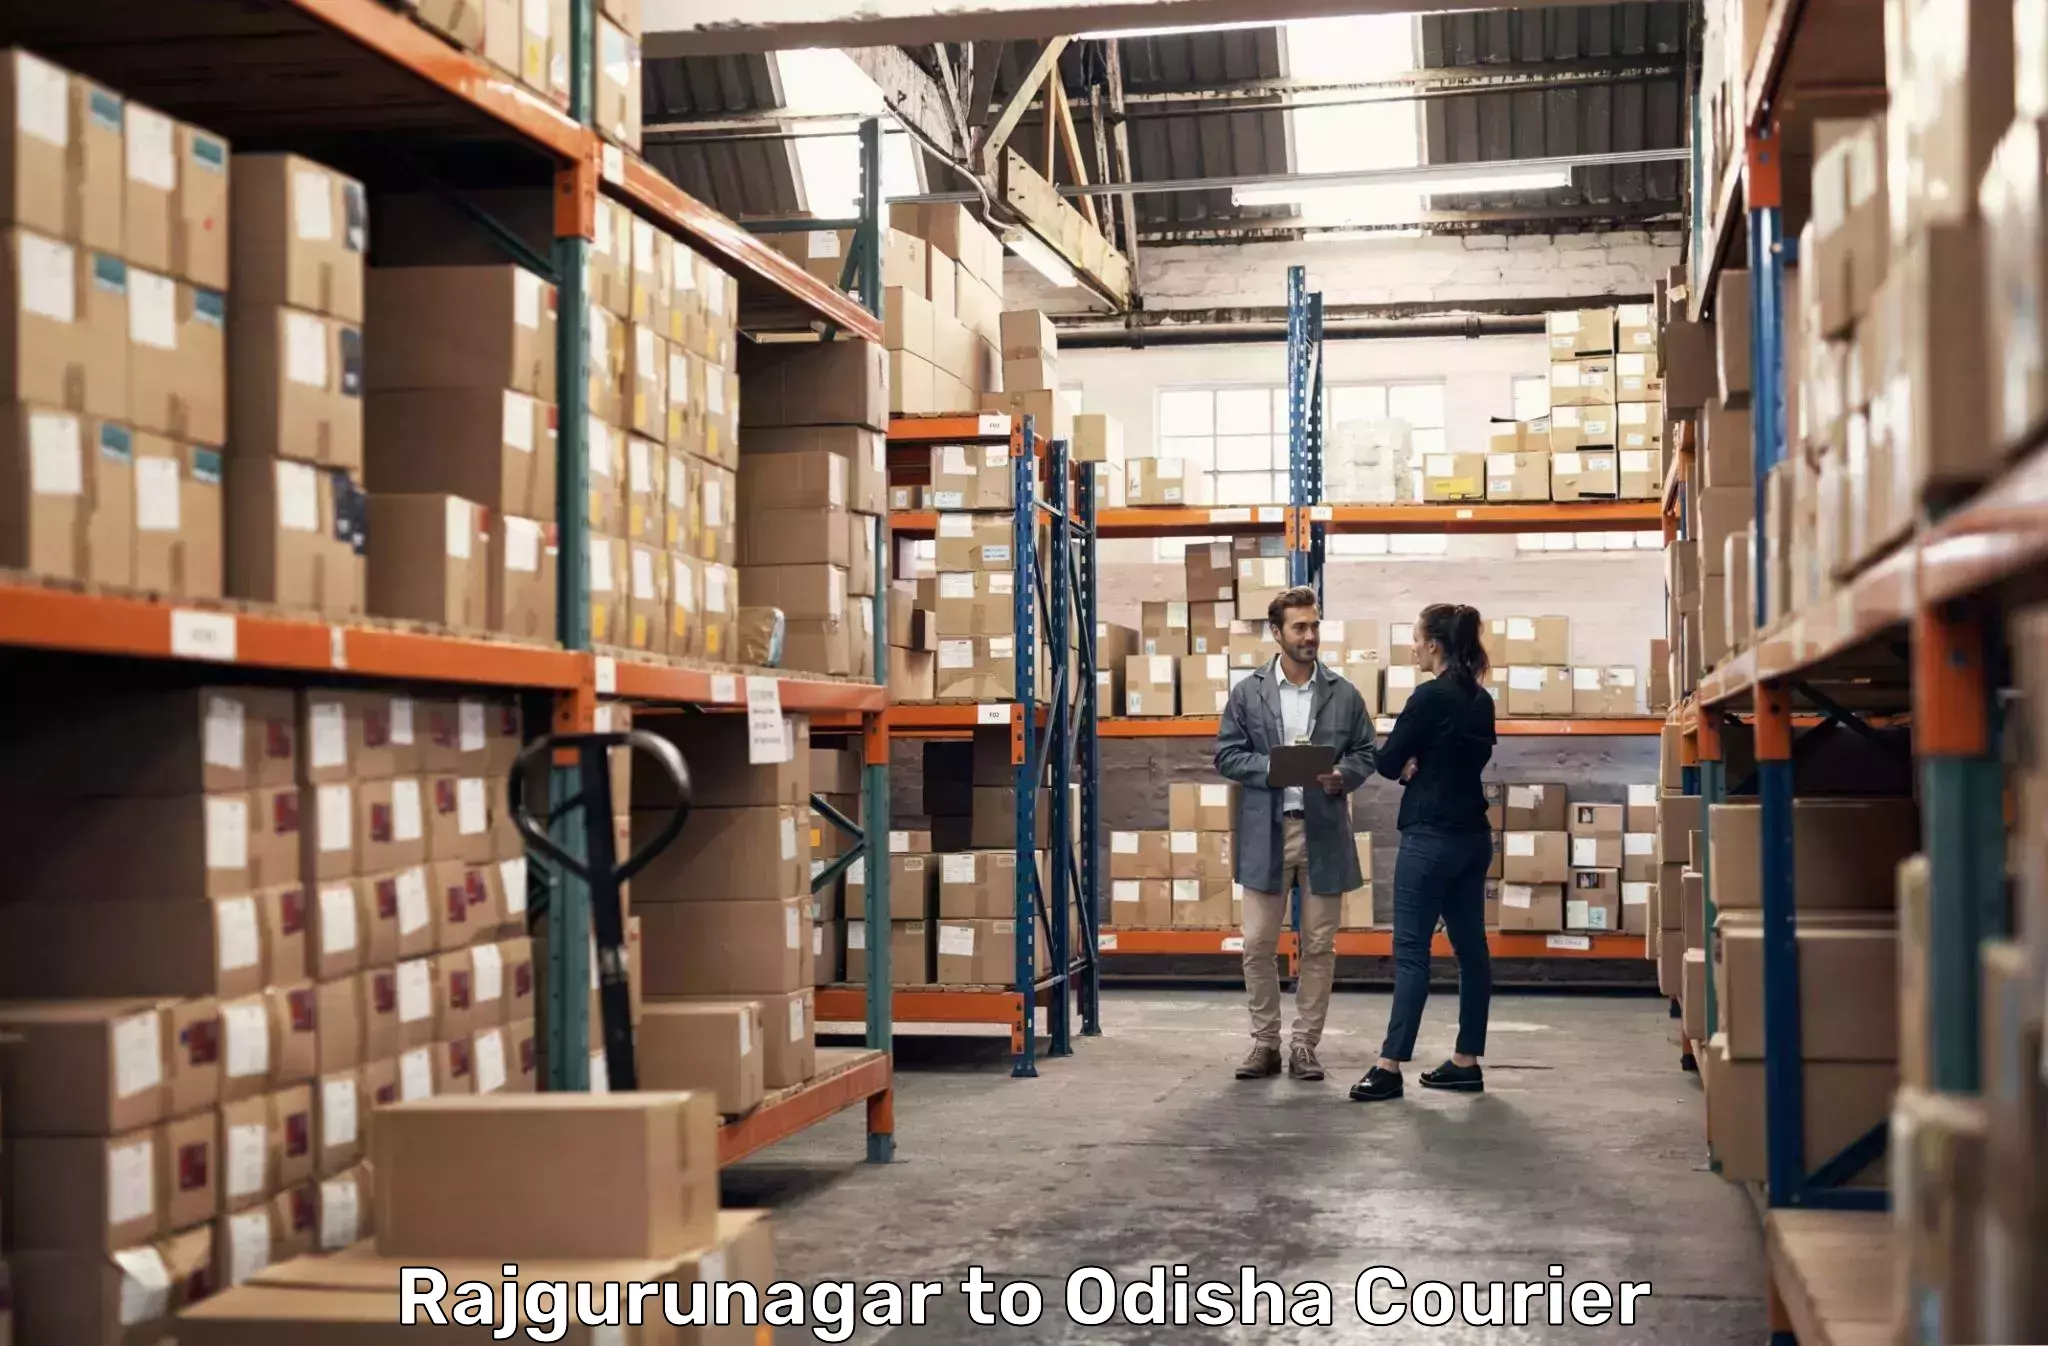 Business shipping needs Rajgurunagar to Raruan